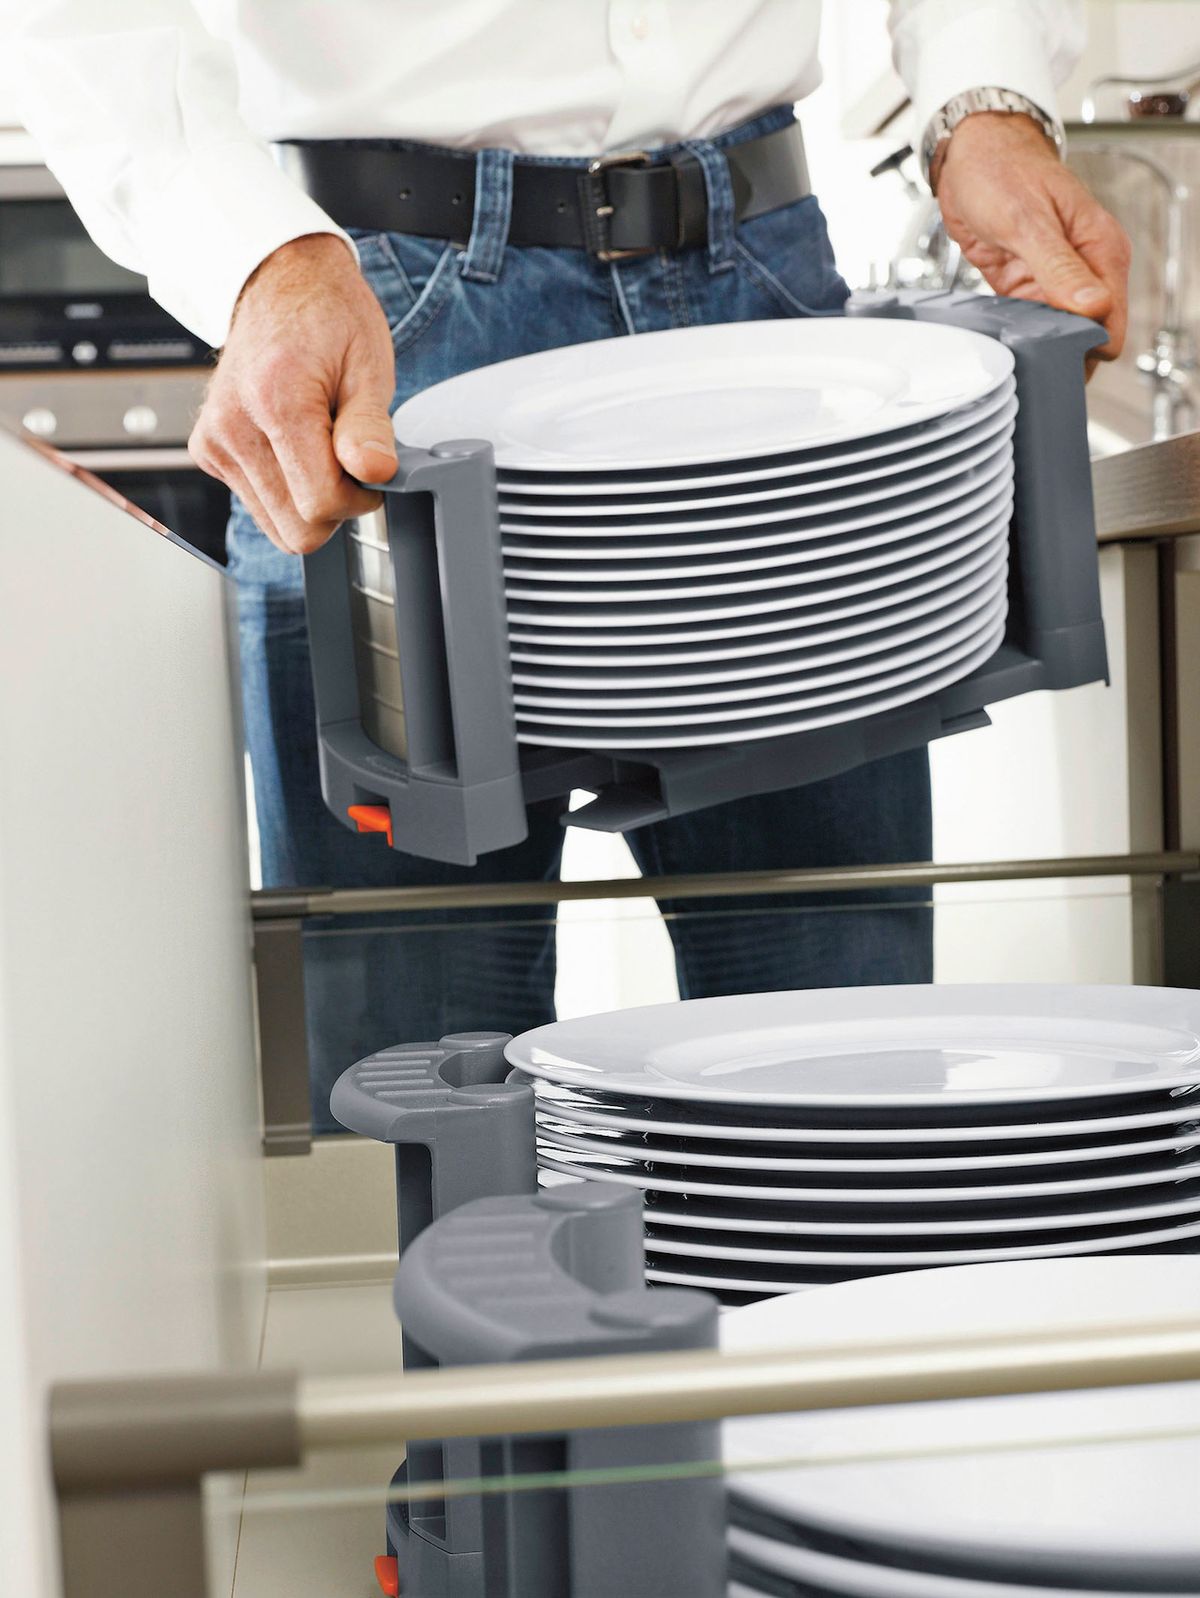 Držák talířů je praktický nejen v zásuvce, ale i při přenášení na stůl. Udrží pořádek a zamezí sesouvání nádobí. Průměr je nastavitelný od 18 do 32 cm, výška 14 cm. Cena 1470 Kč/kus.